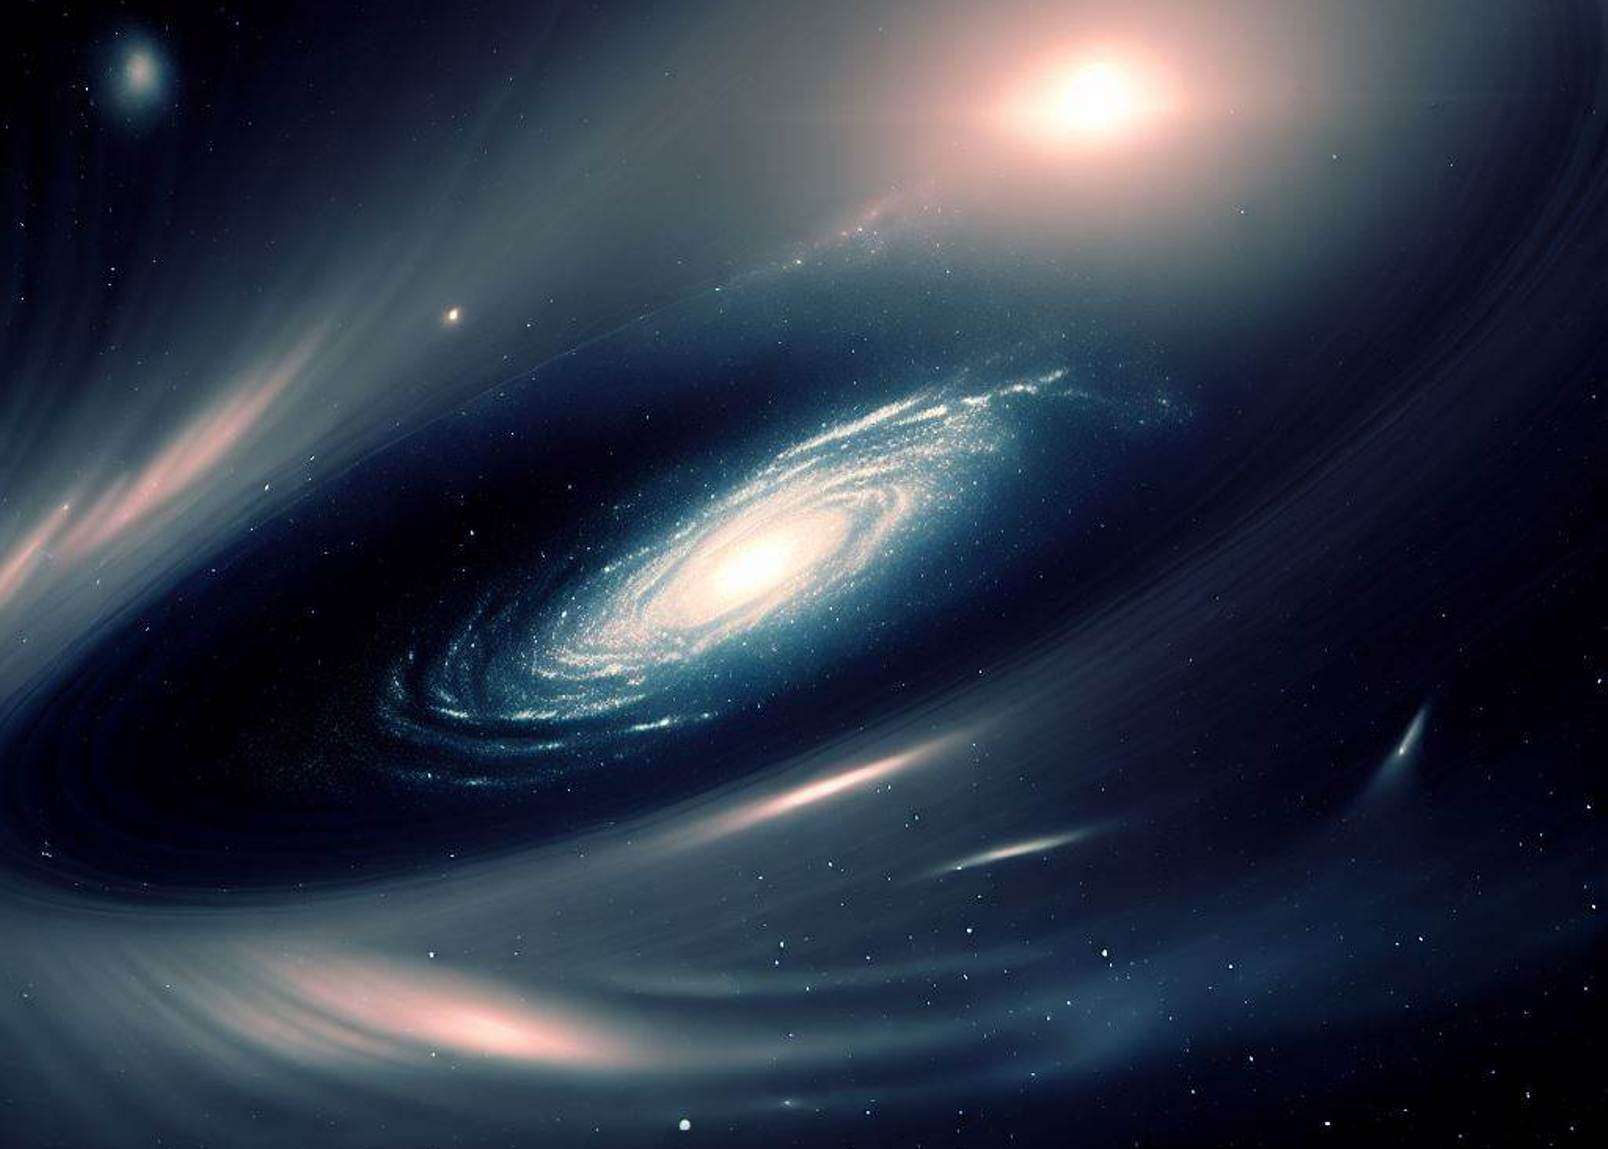 The true nature of dark matter revealed by Einstein’s ring?